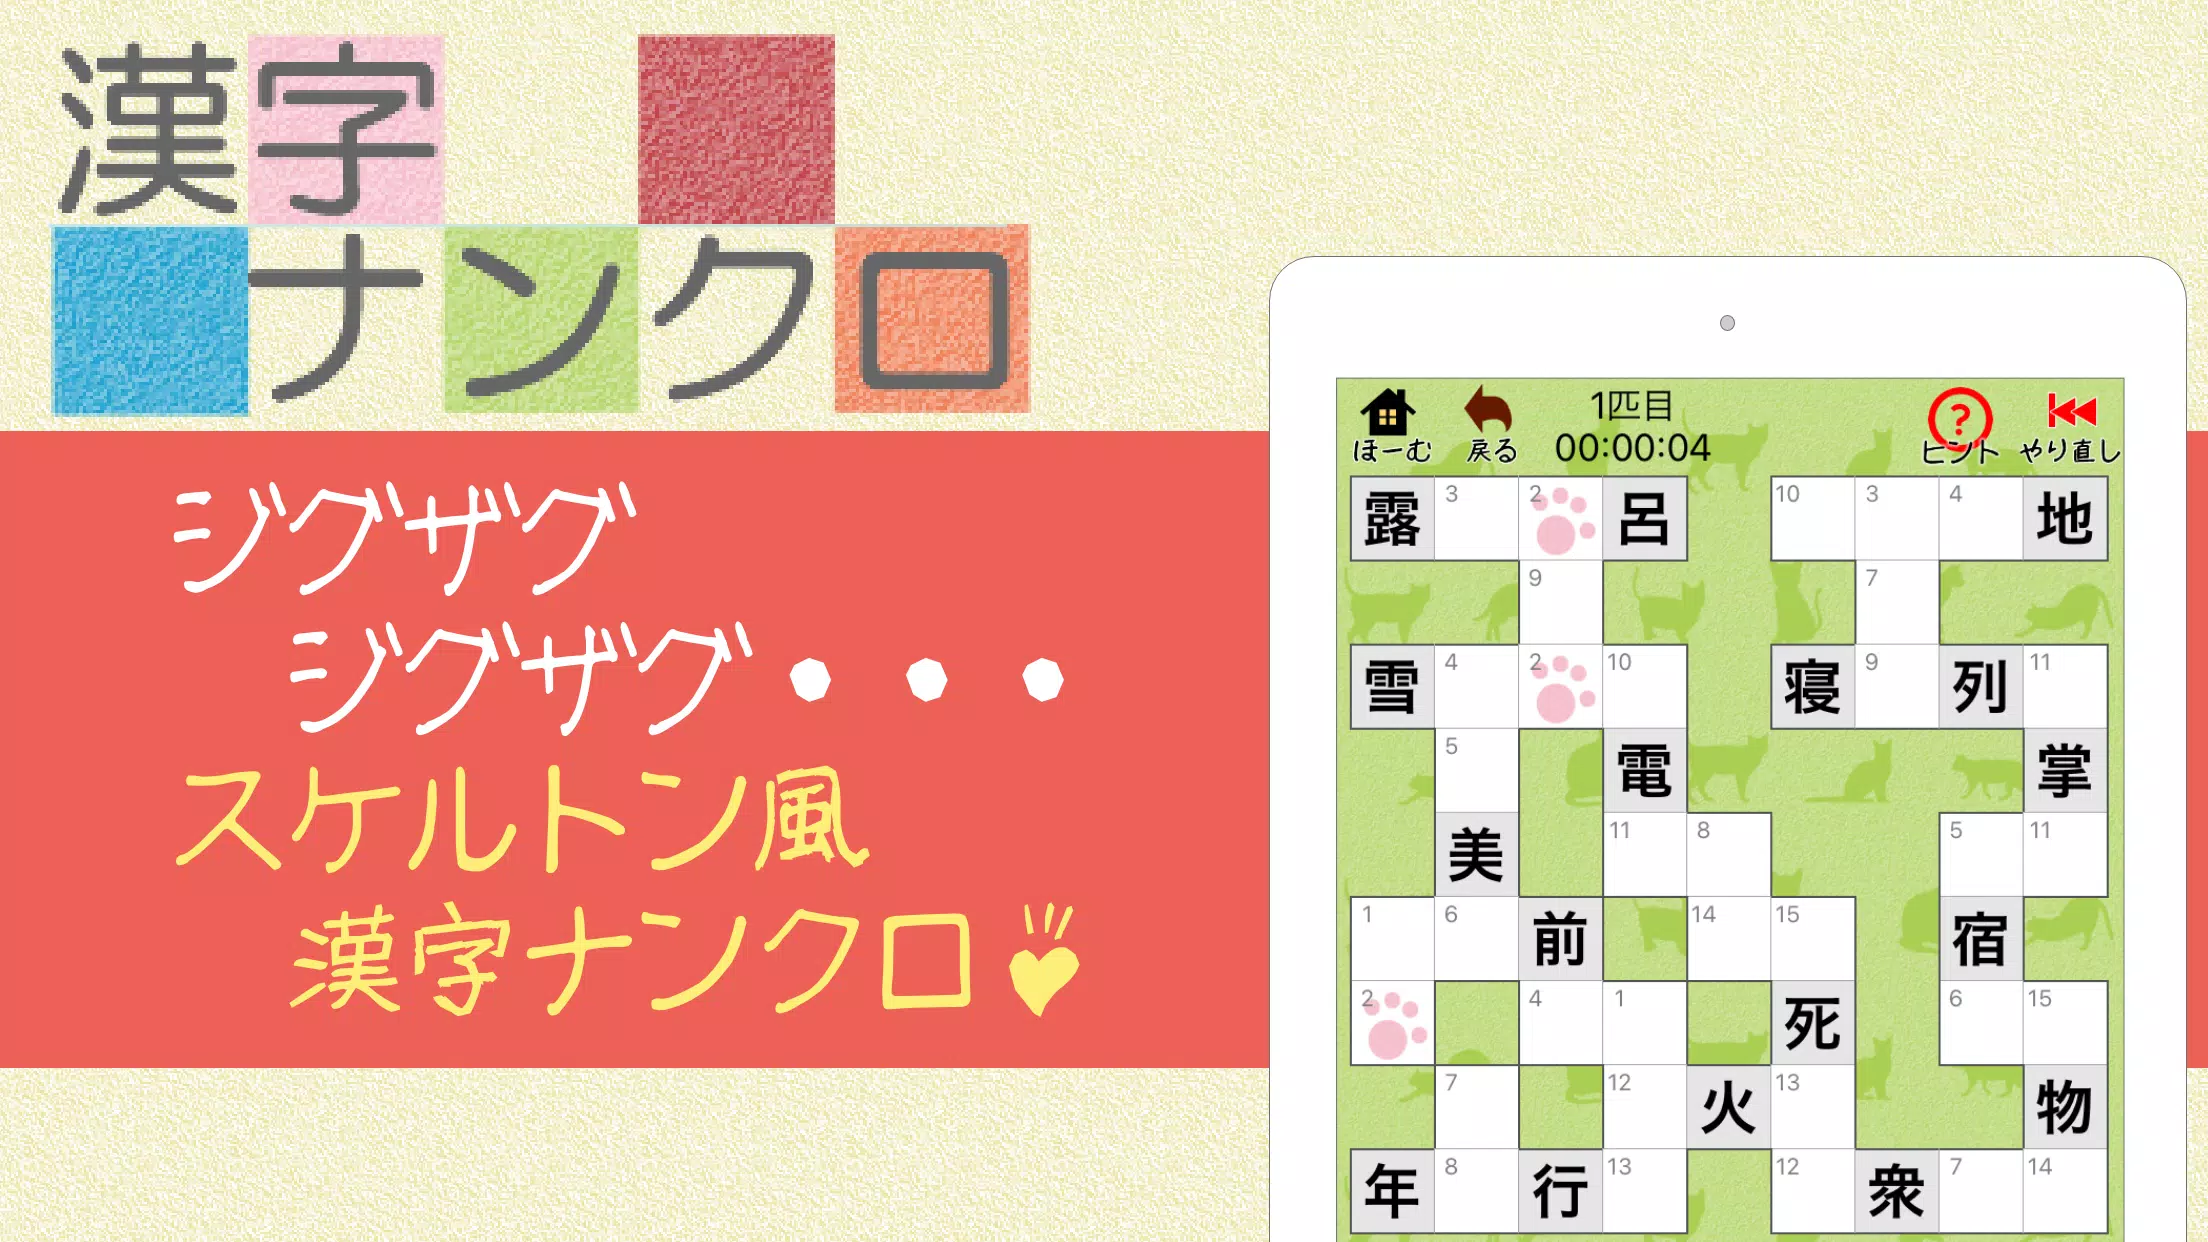 Android용 漢字ナンクロ 脳トレできる漢字クロスワードパズル Apk 다운로드